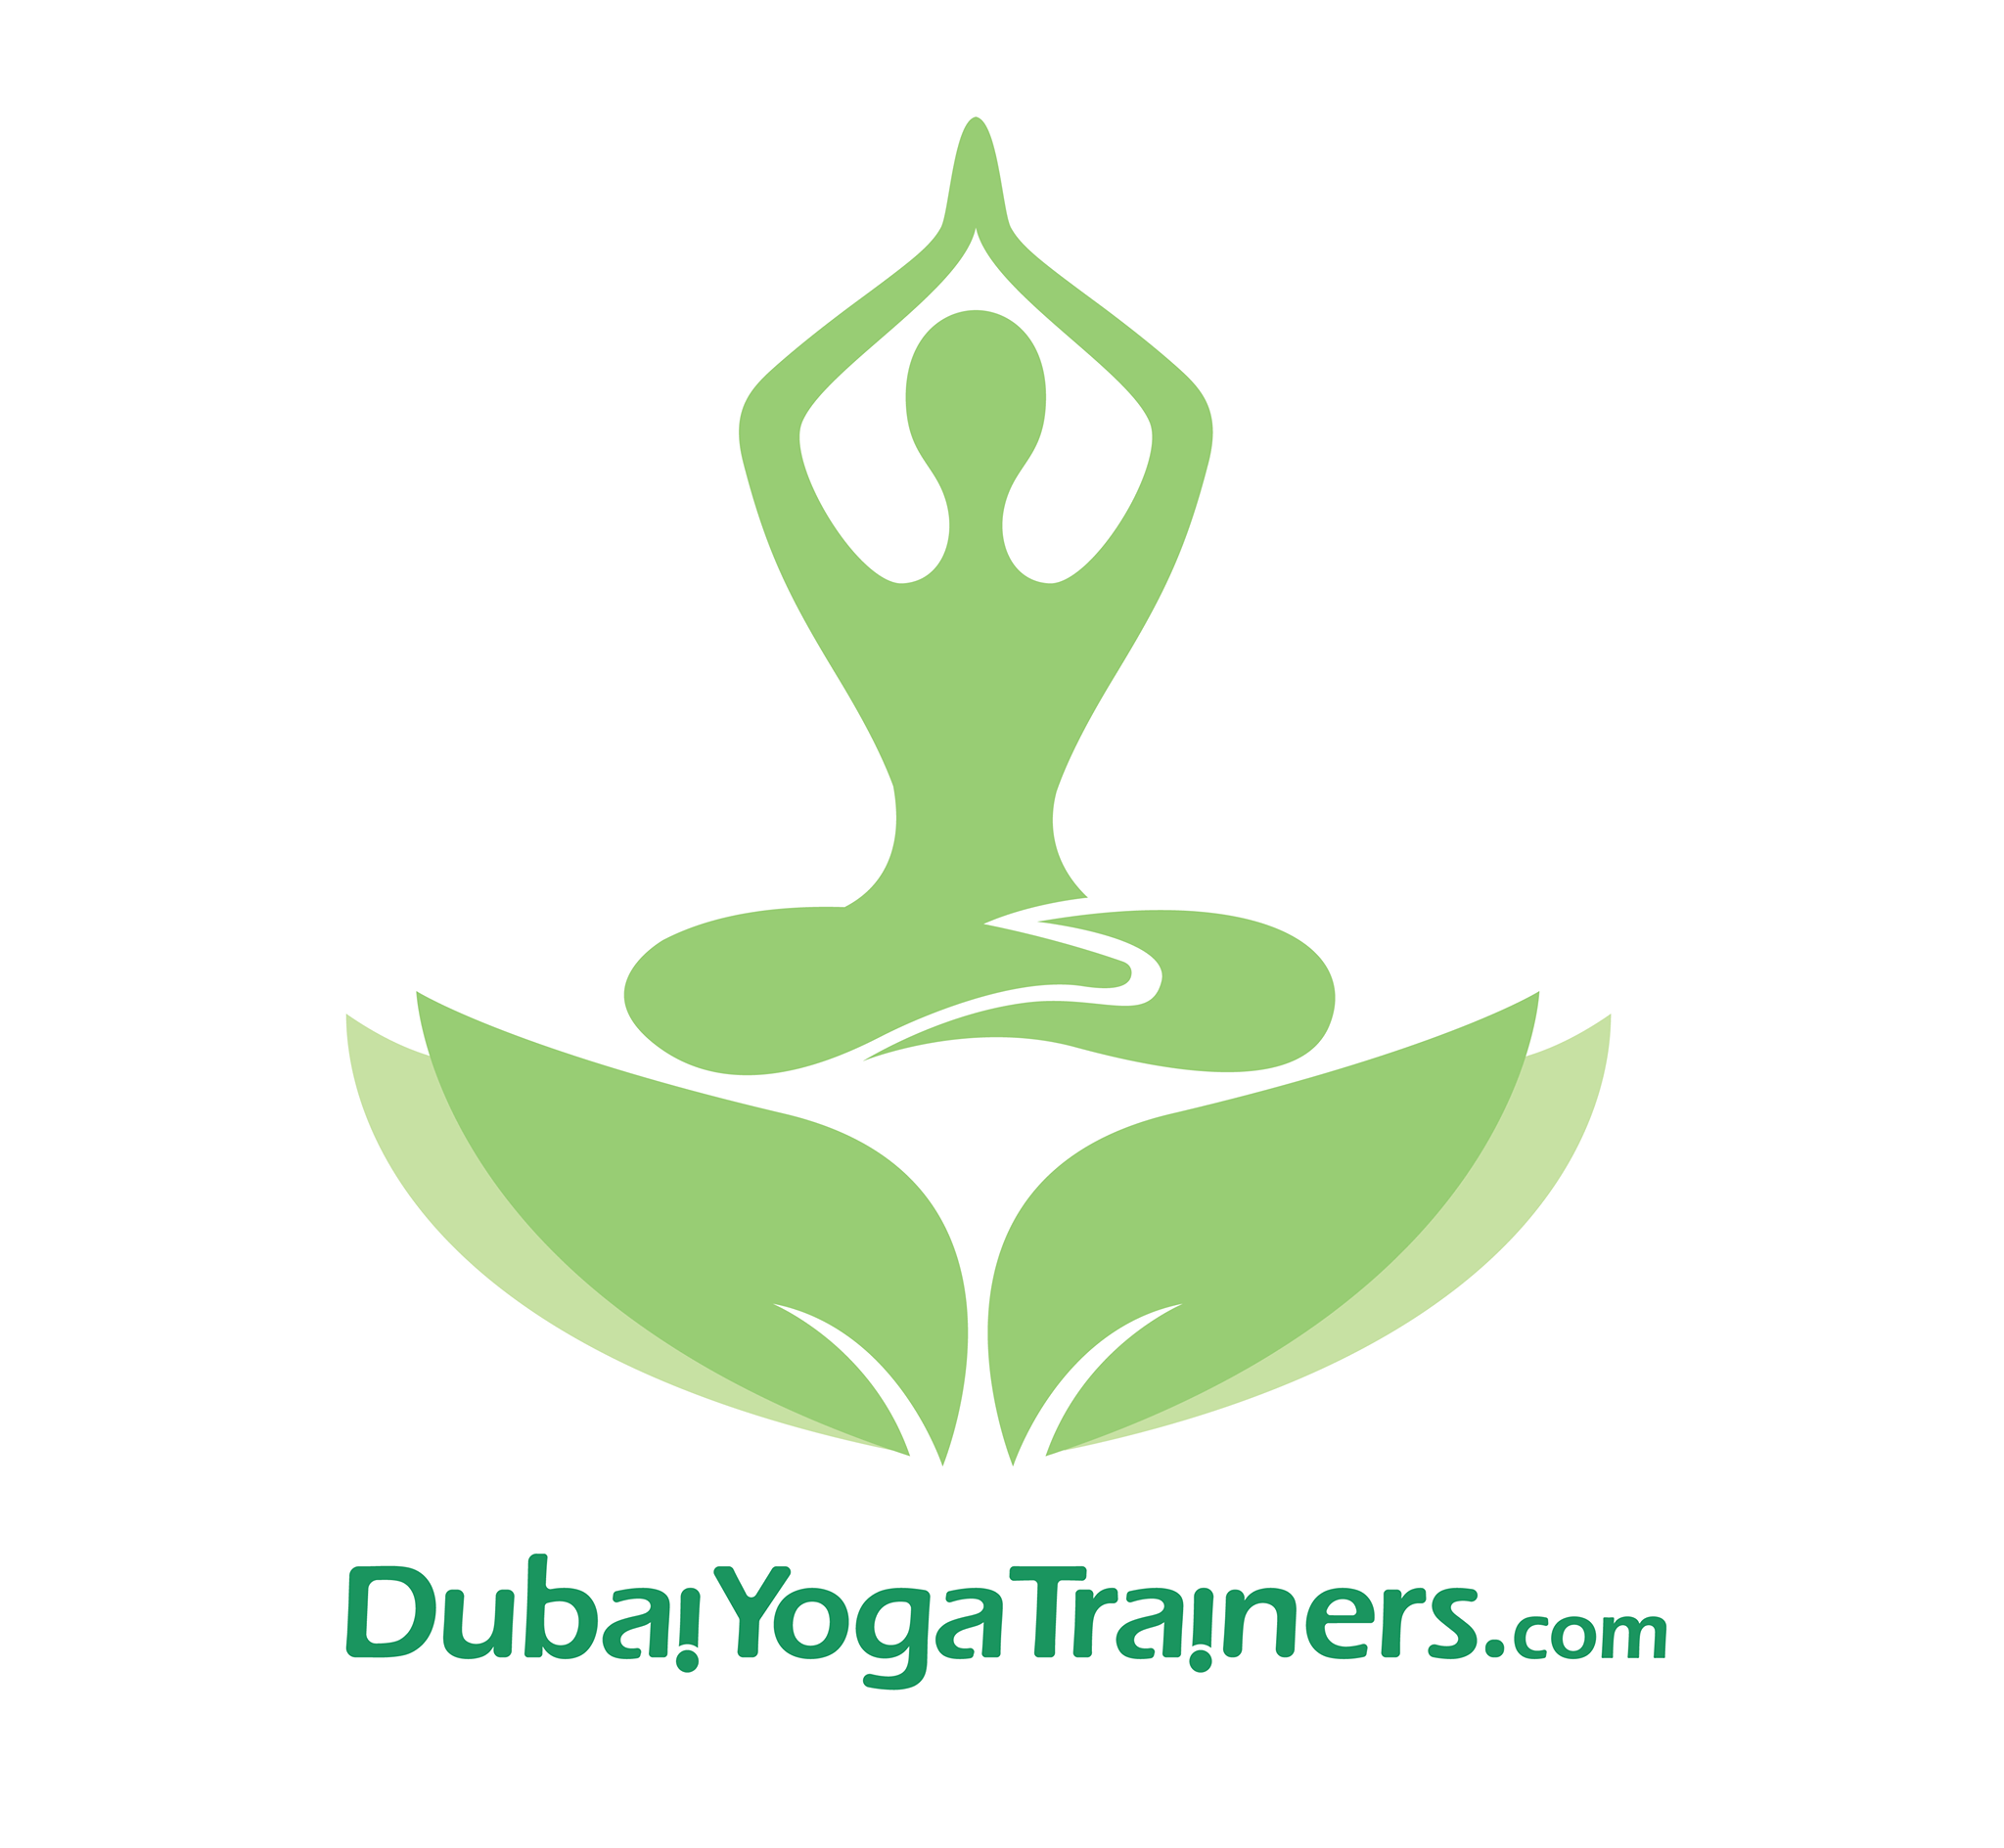 Dubai Yoga Trainers